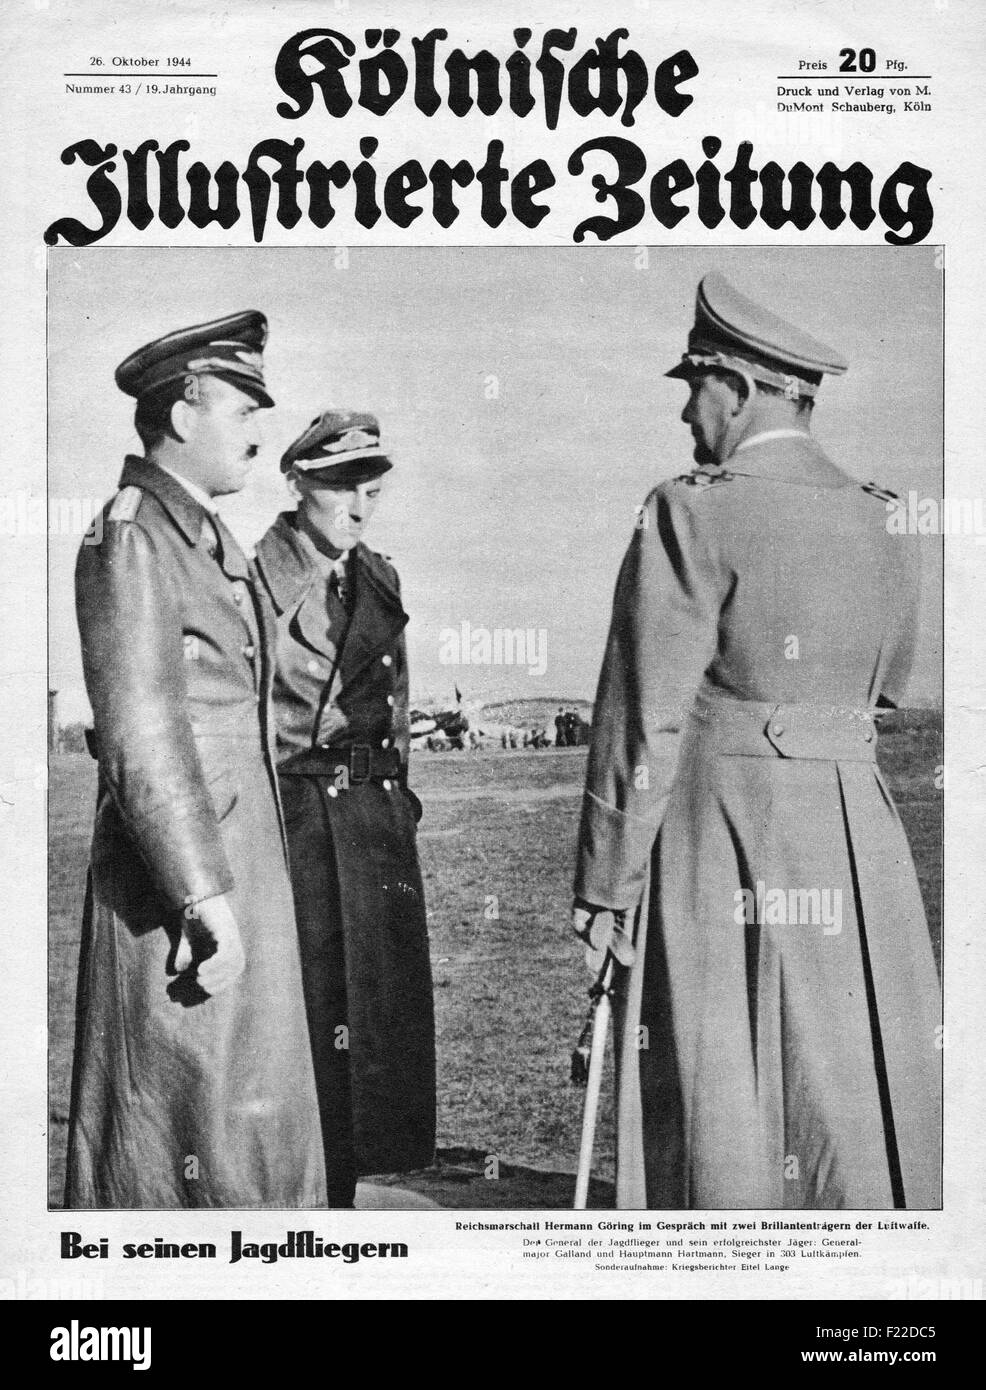 1944 Kolnischer Illustrierte Zeitung front page showing Reichsmarschall Hermann Goering & General-Major Adolf Galland Stock Photo